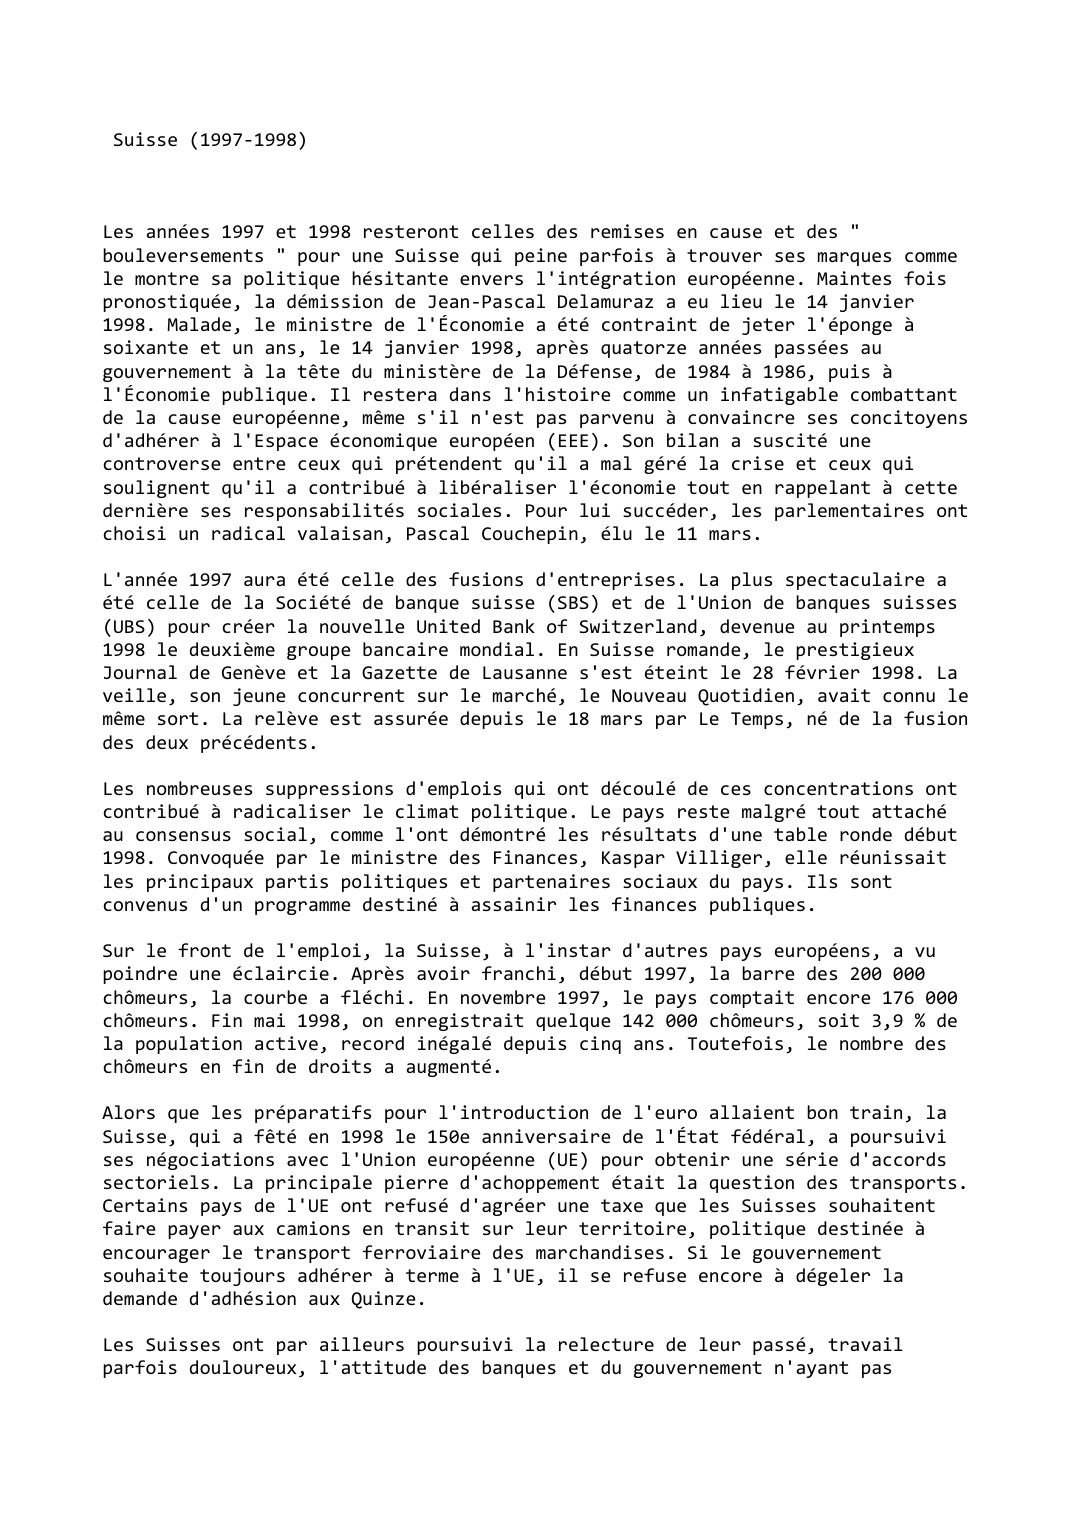 Prévisualisation du document Suisse (1997-1998)